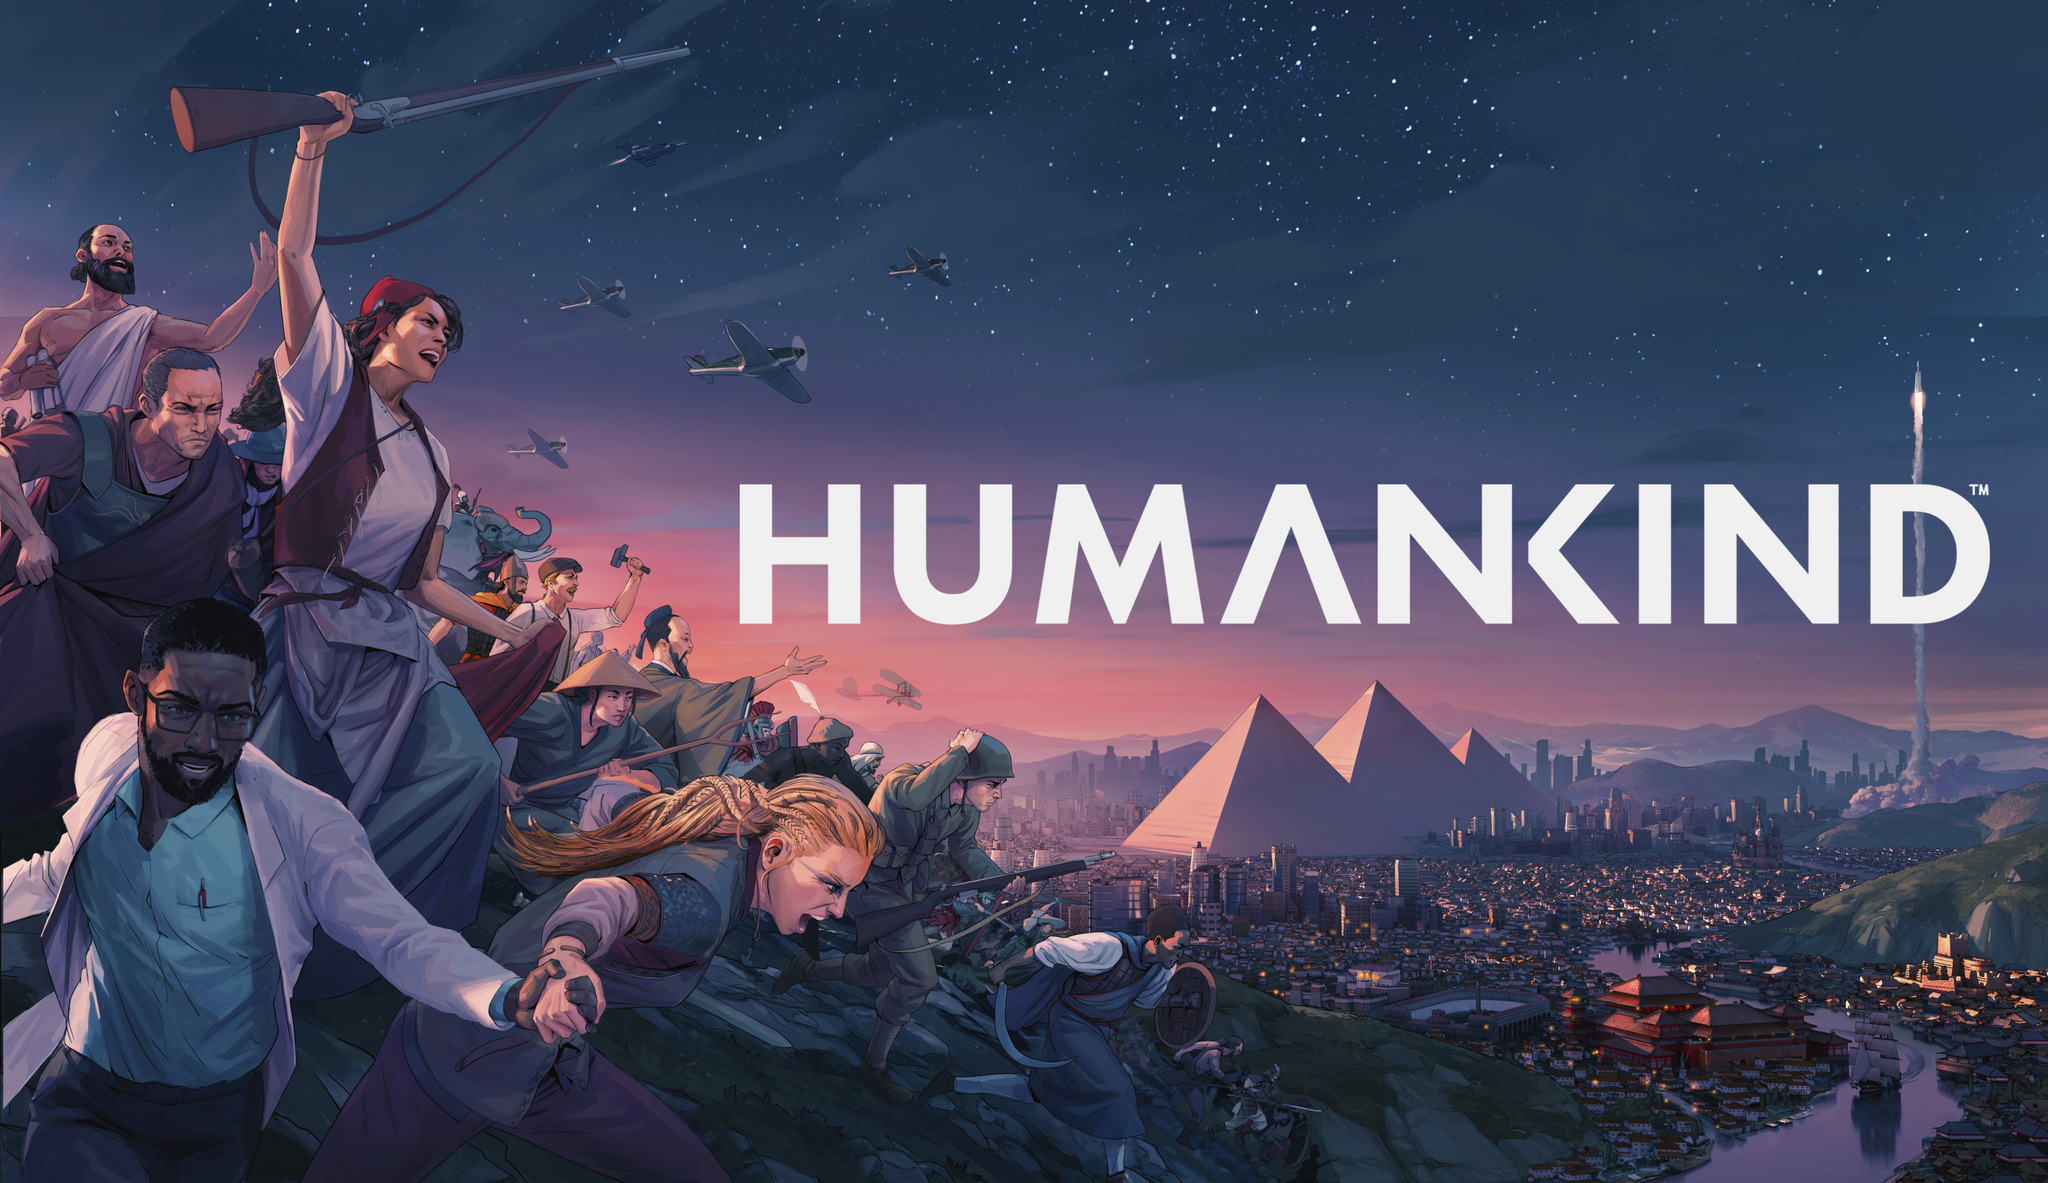 Humankind, o novo jogo de estratégia em turnos da Sega, já está disponível em pré-venda